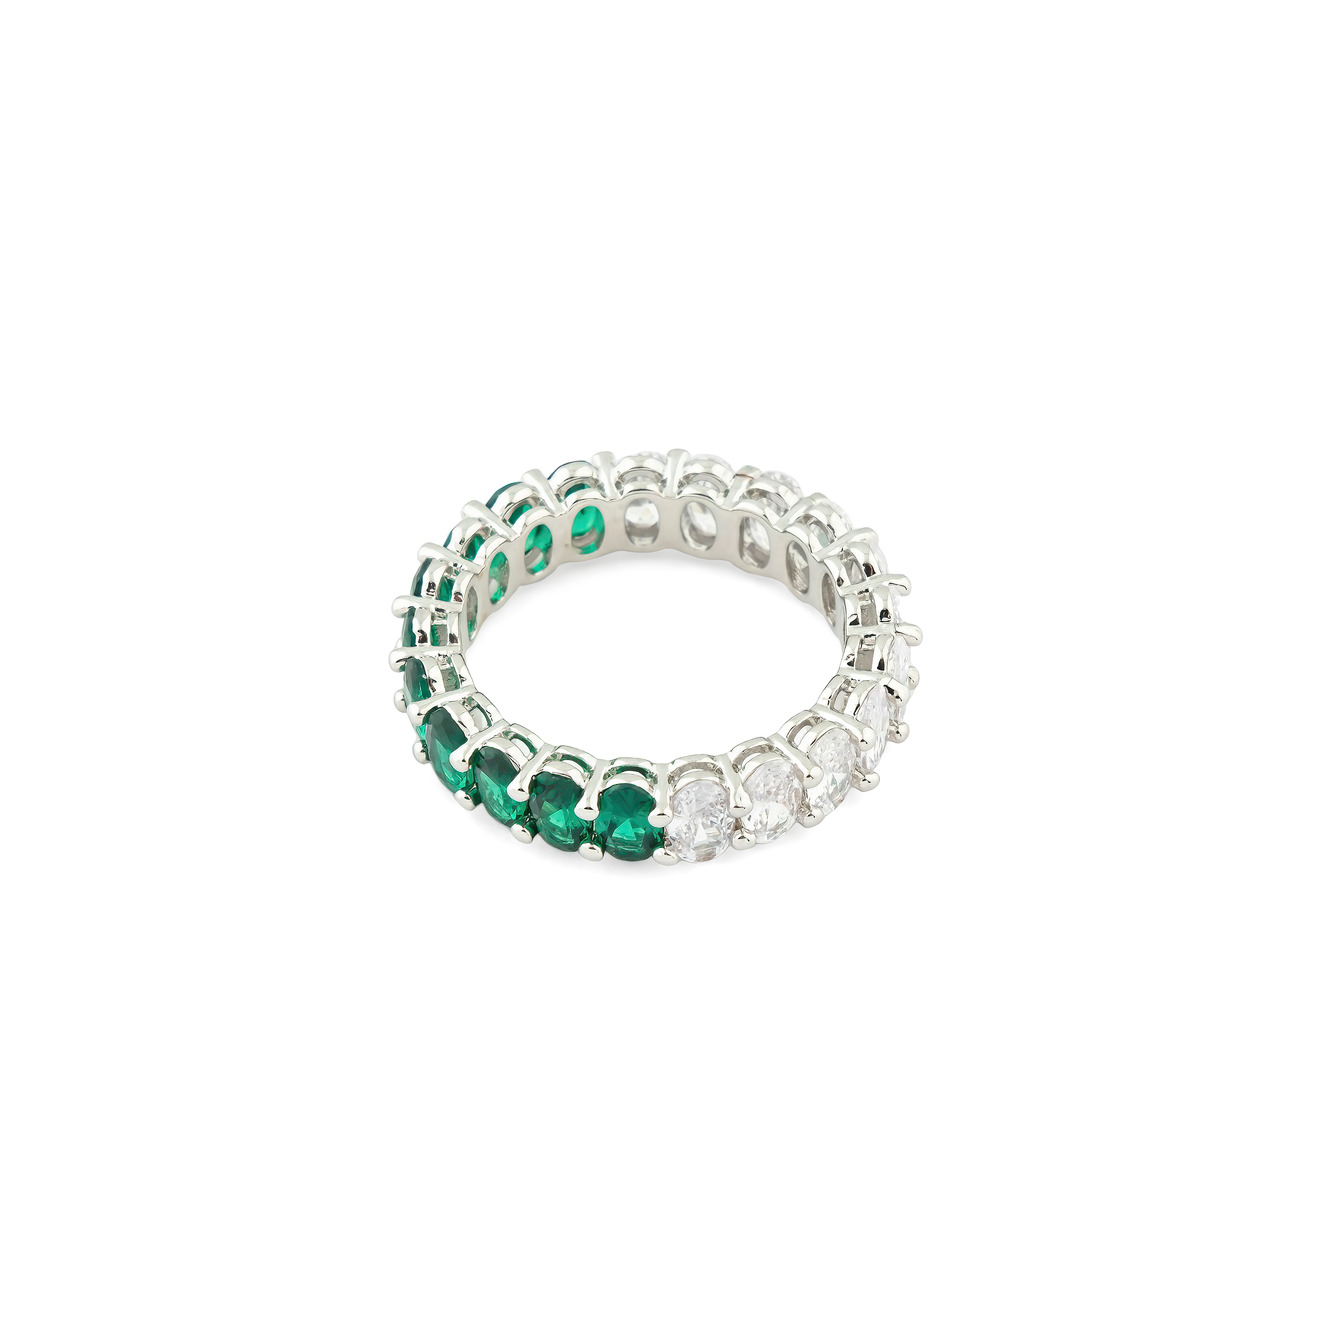 Herald Percy Серебристое кольцо с овалами белых и зеленых кристаллов herald percy серебристое кольцо из трех элементов с паве из зеленых и синих кристаллов